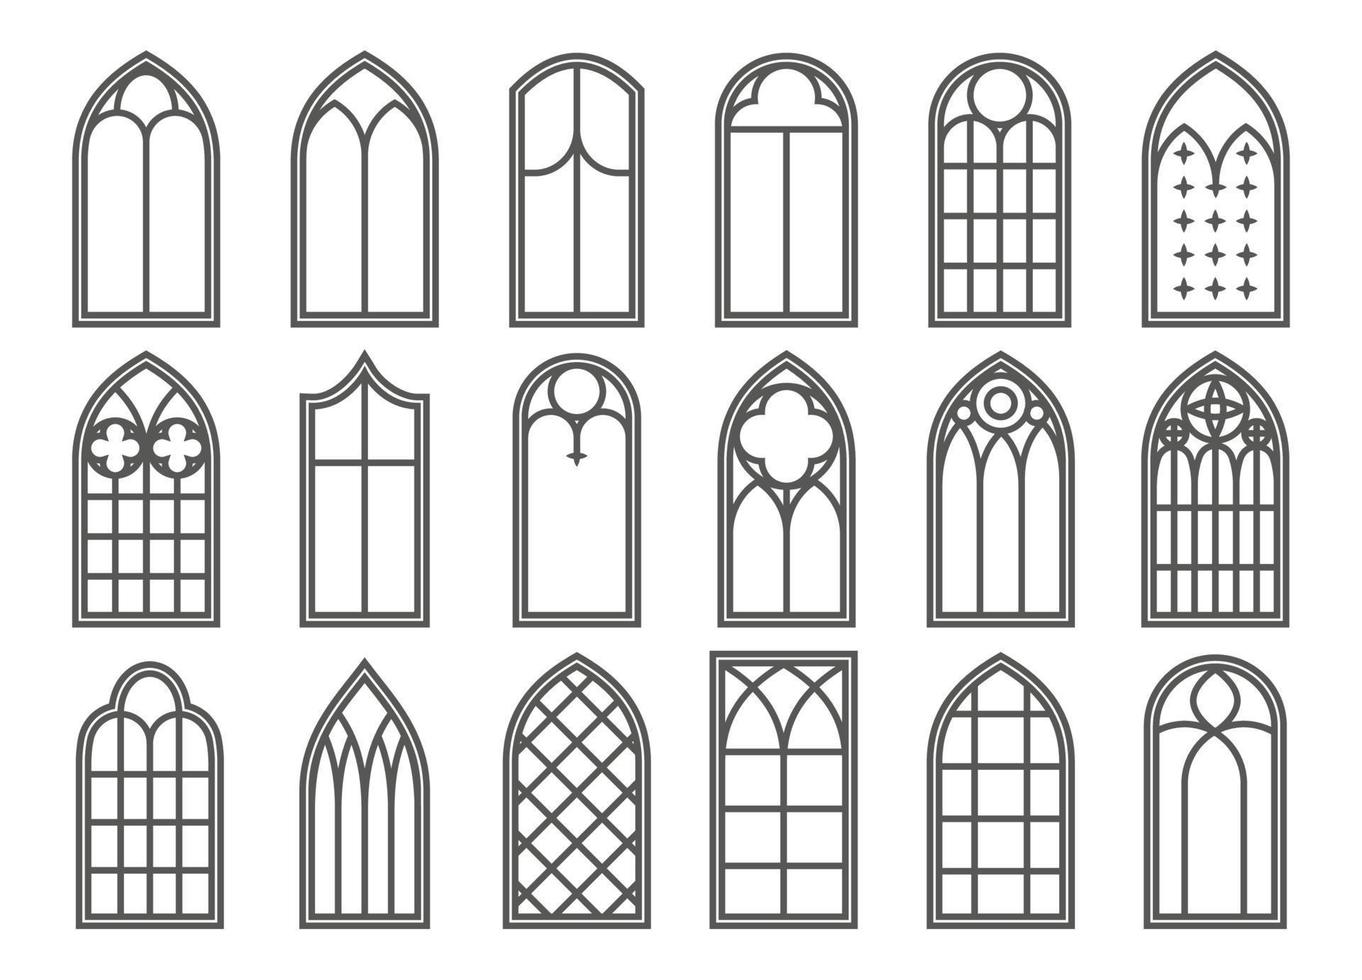 set di finestre medievali della chiesa. elementi di architettura in stile gotico antico. illustrazione di contorno vettoriale su sfondo bianco.